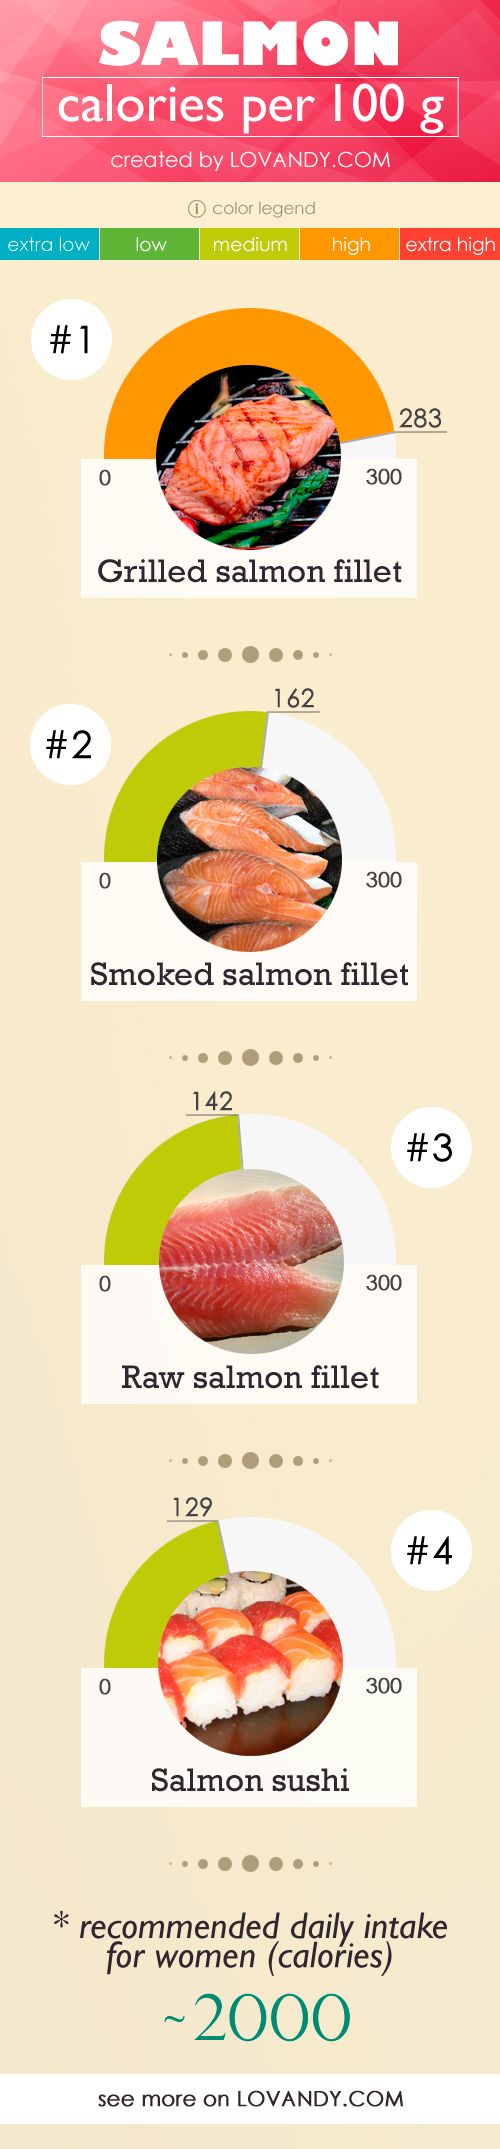 100g smoked salmon calories